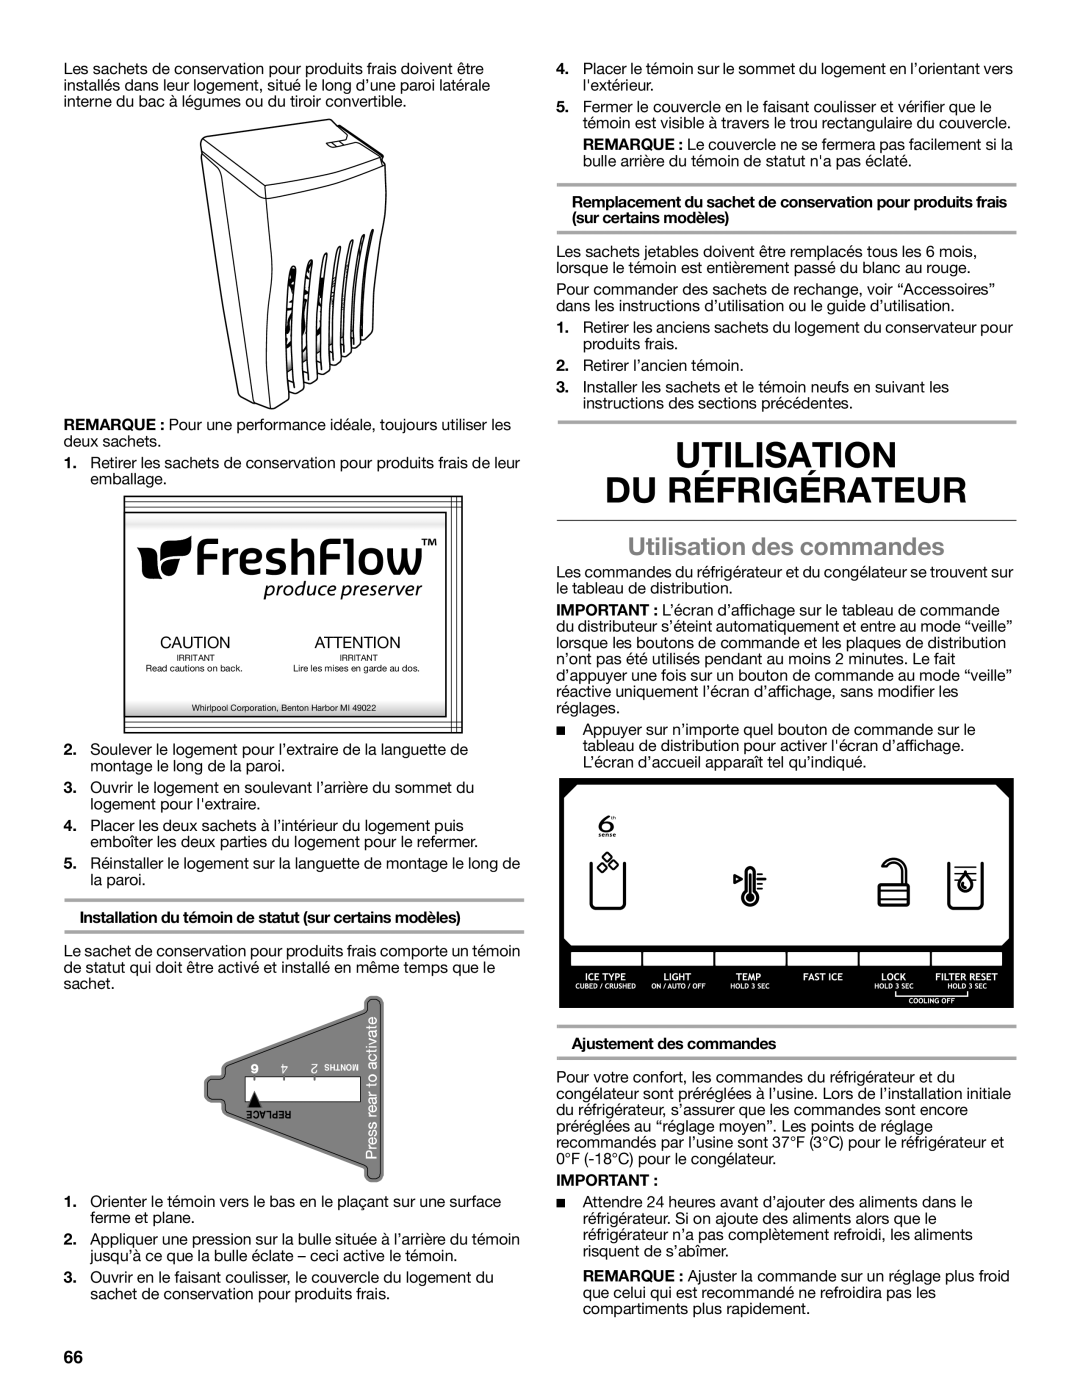 Whirlpool W10632883A installation instructions Utilisation Du Réfrigérateur, Utilisation des commandes, Replace 